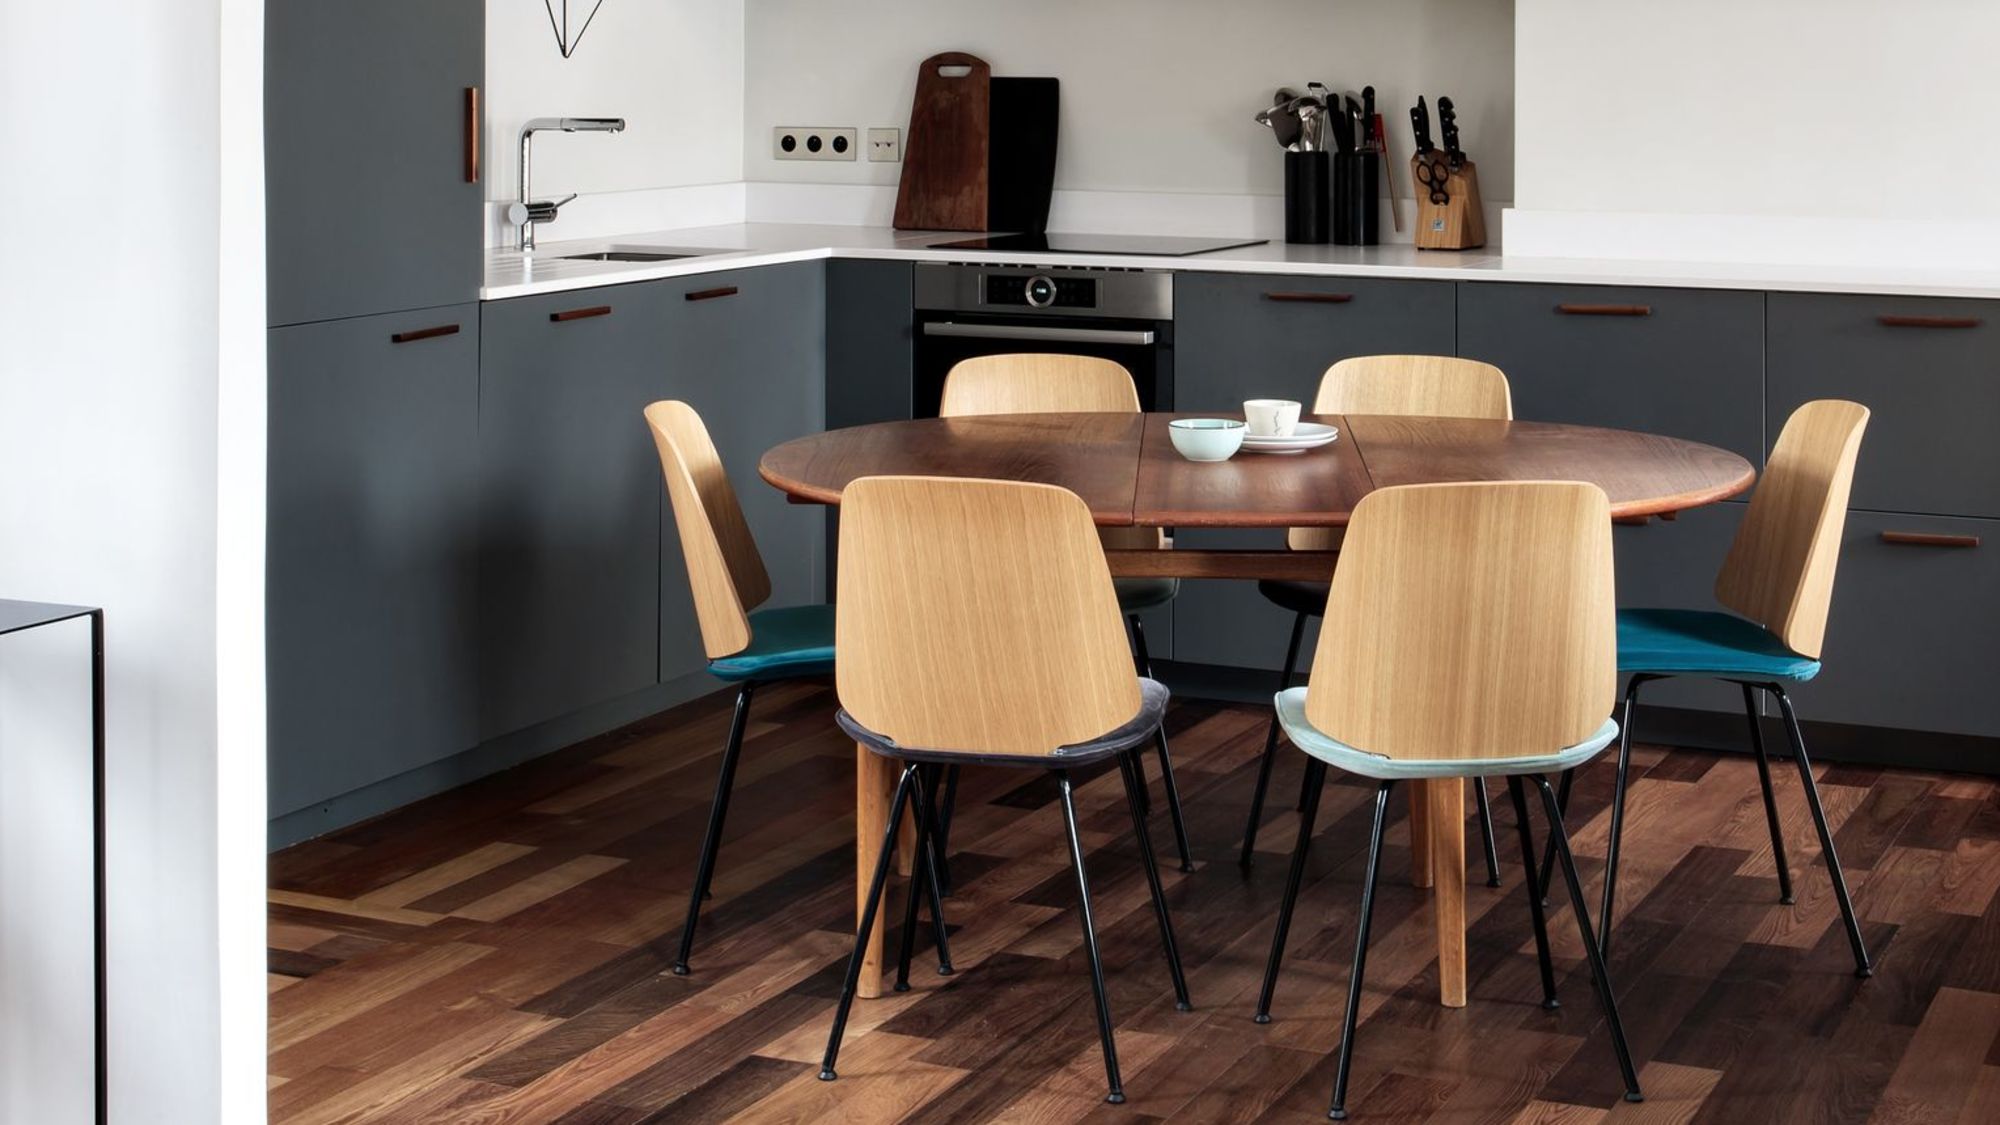 Table et chaises : comment aménager le coin repas dans la cuisine ?